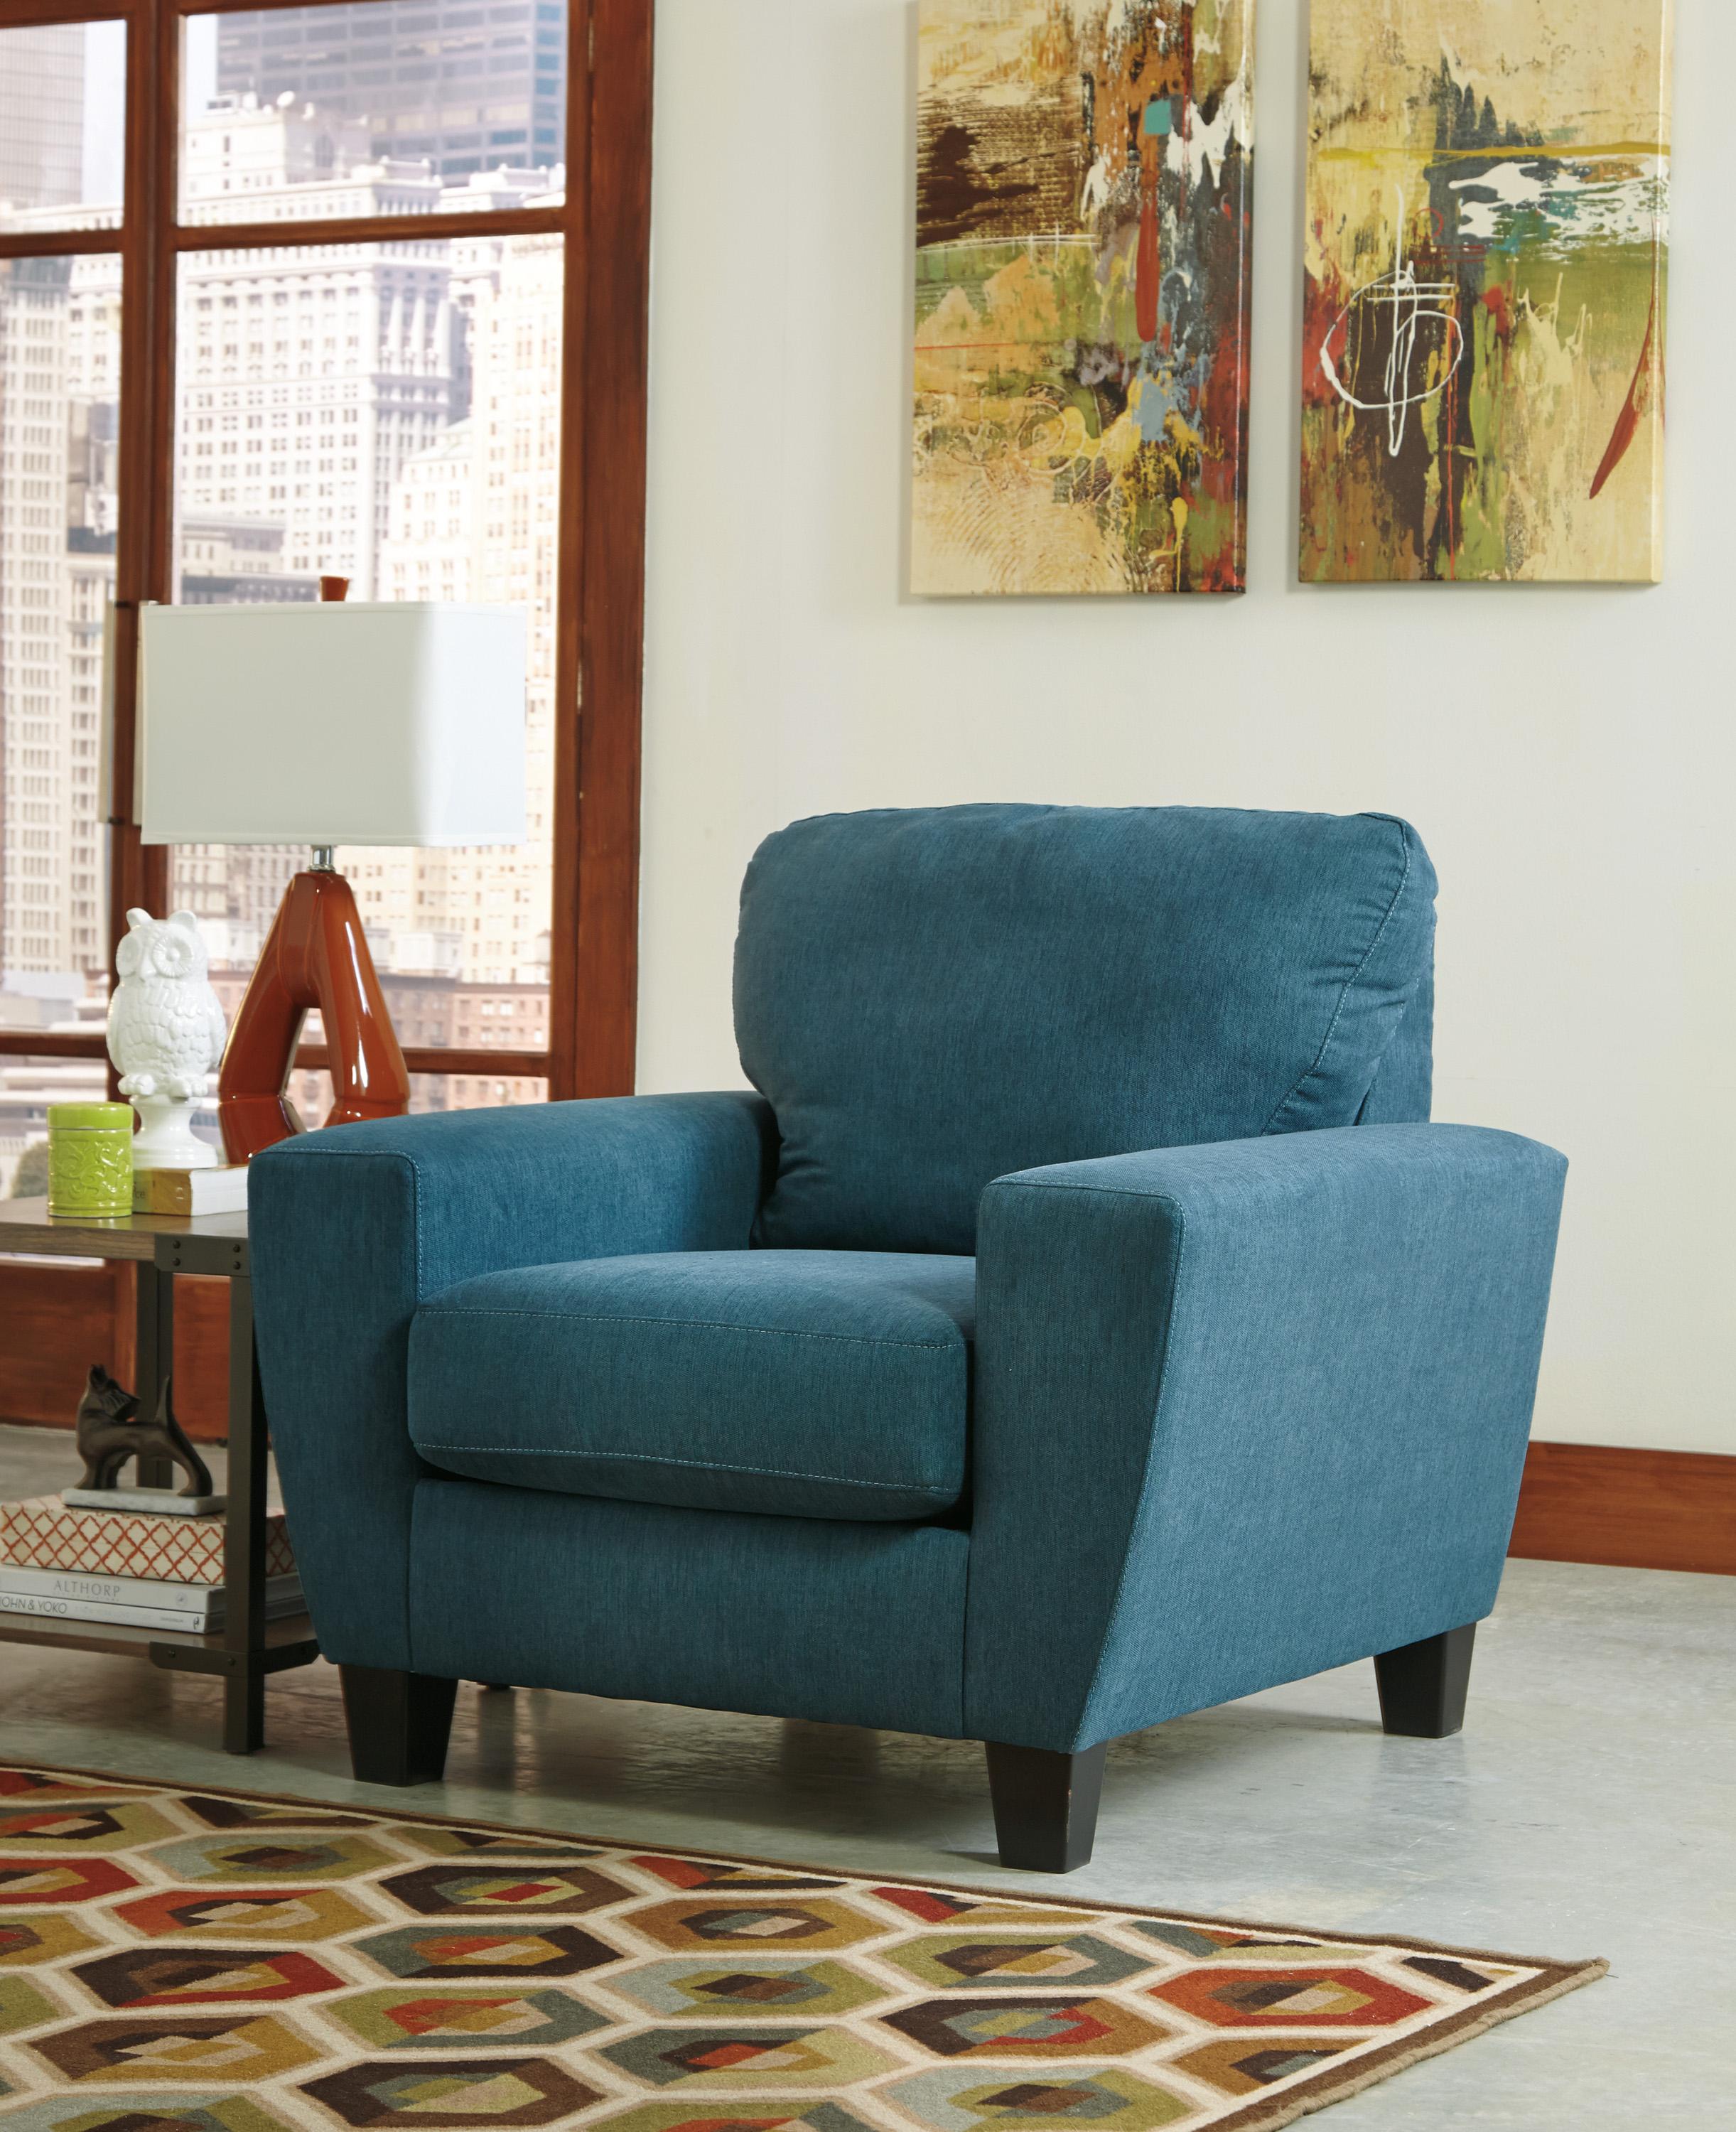 

                    
Ashley Furniture Sagen Living Room Set Teal Textured Microfiber Purchase 
